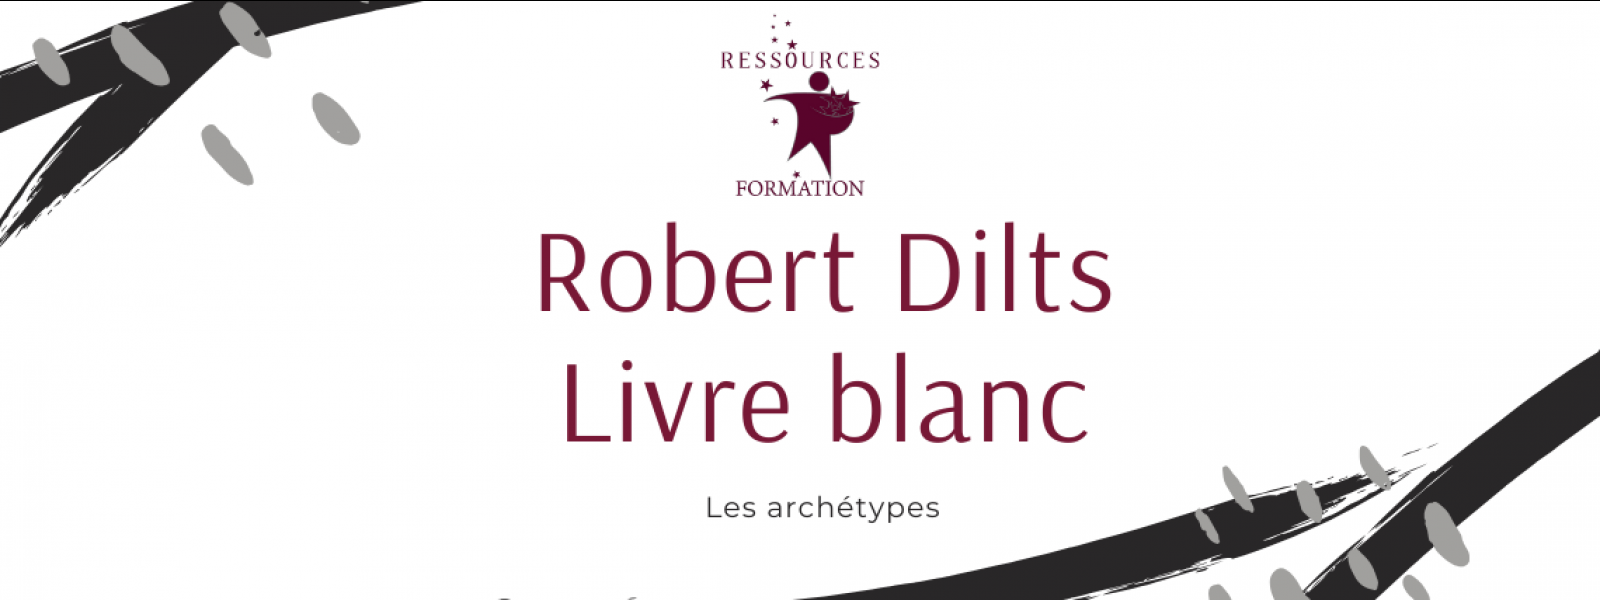 Livre blanc Robert Dilts